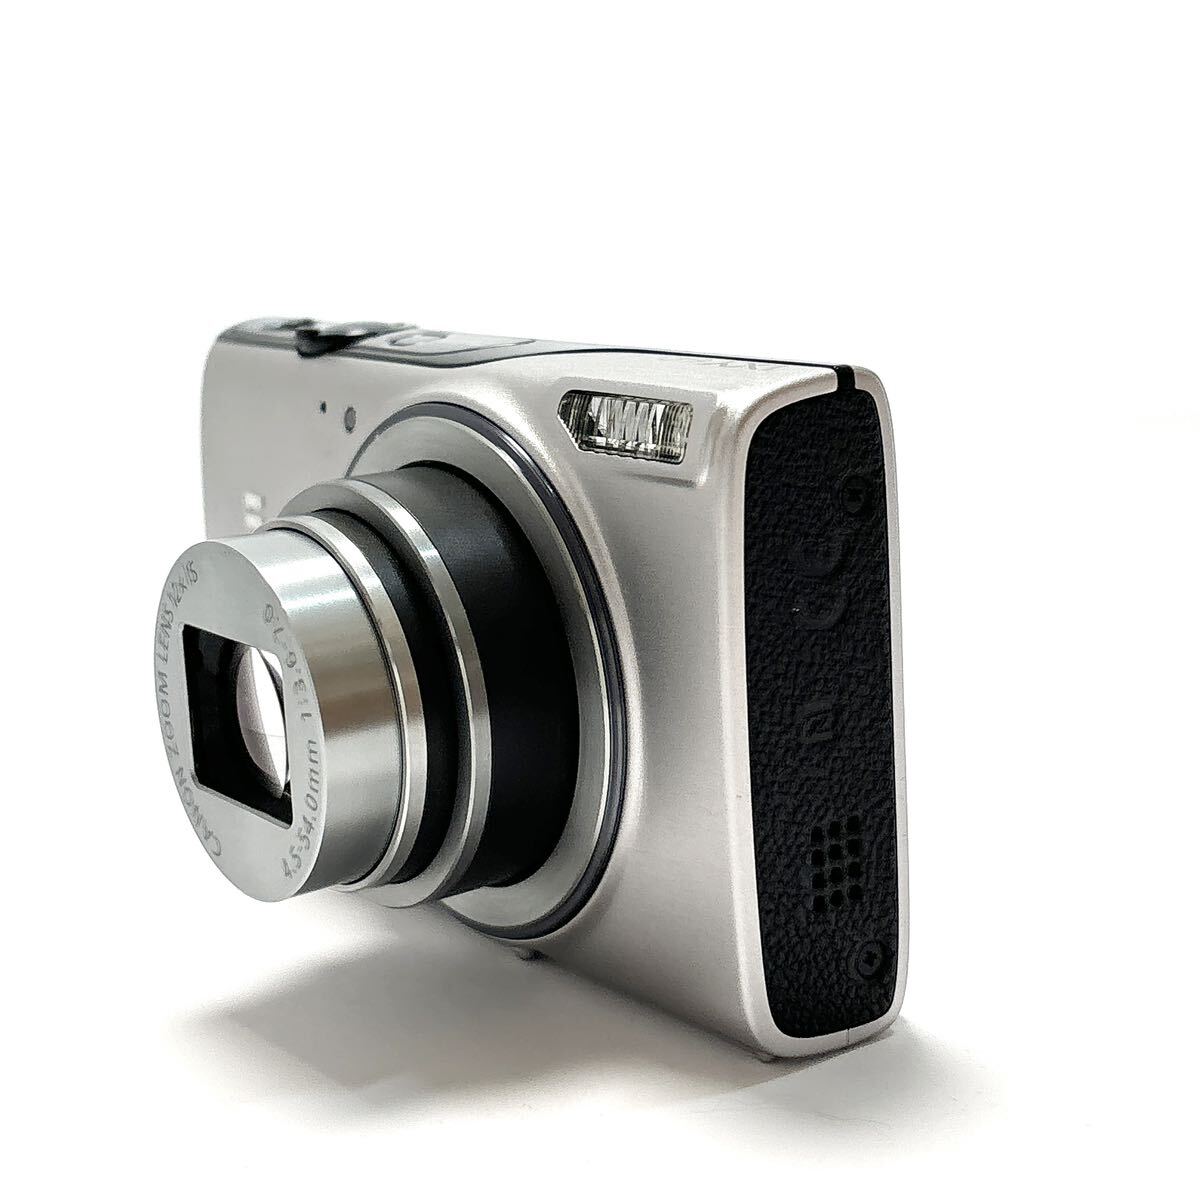 Canon キャノン IXY 640 コンパクトデジタルカメラ alpひ0305_画像9